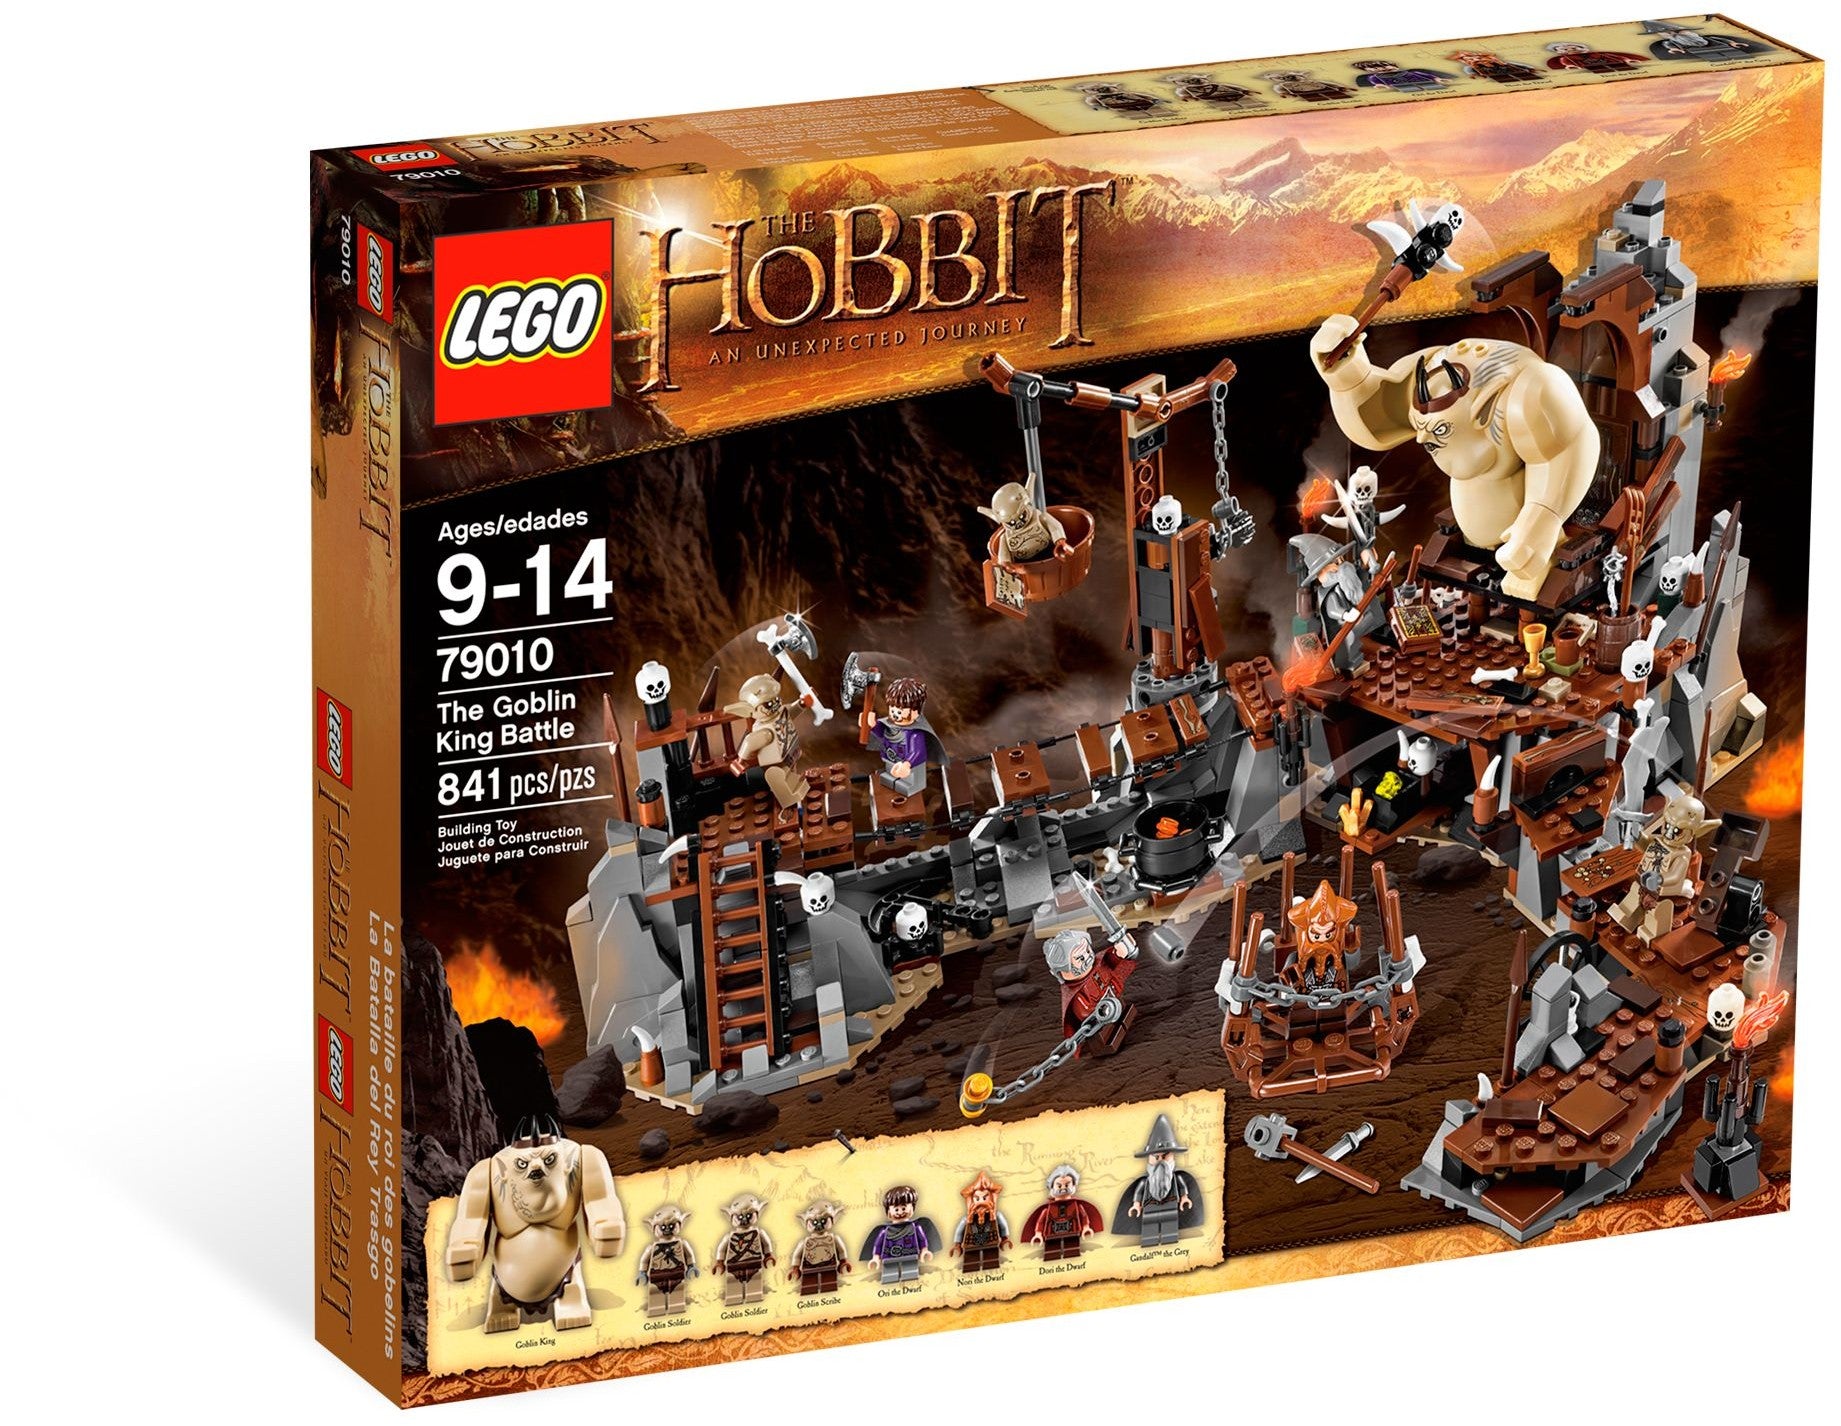 Lego Hobbit 79010 - The Goblin King Battle